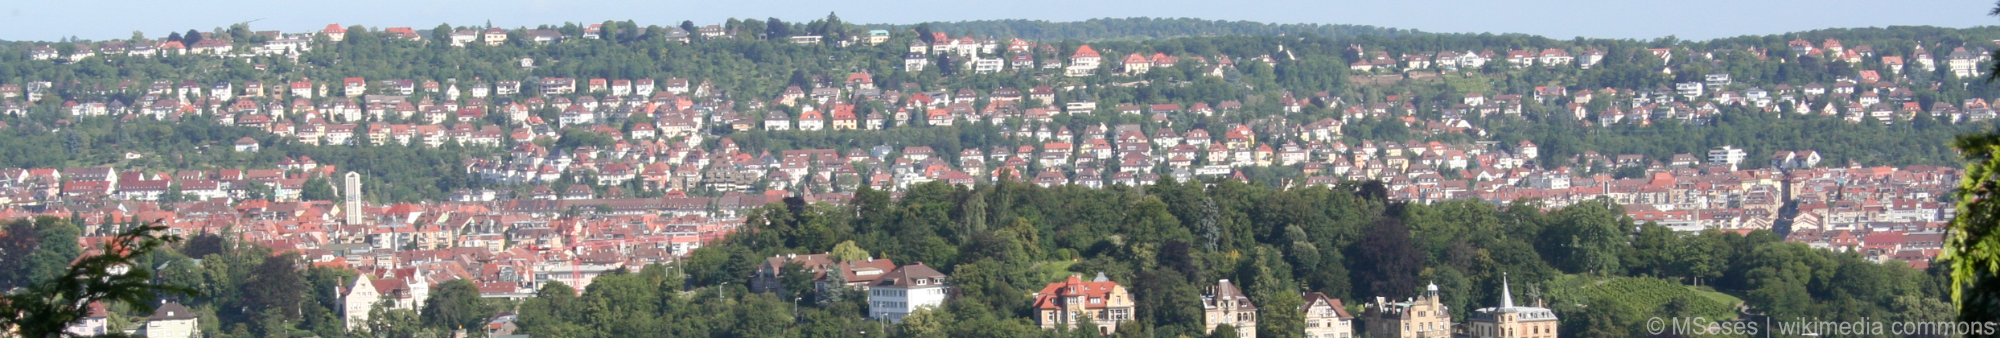 Panoramablick über die Stadt Dortmund